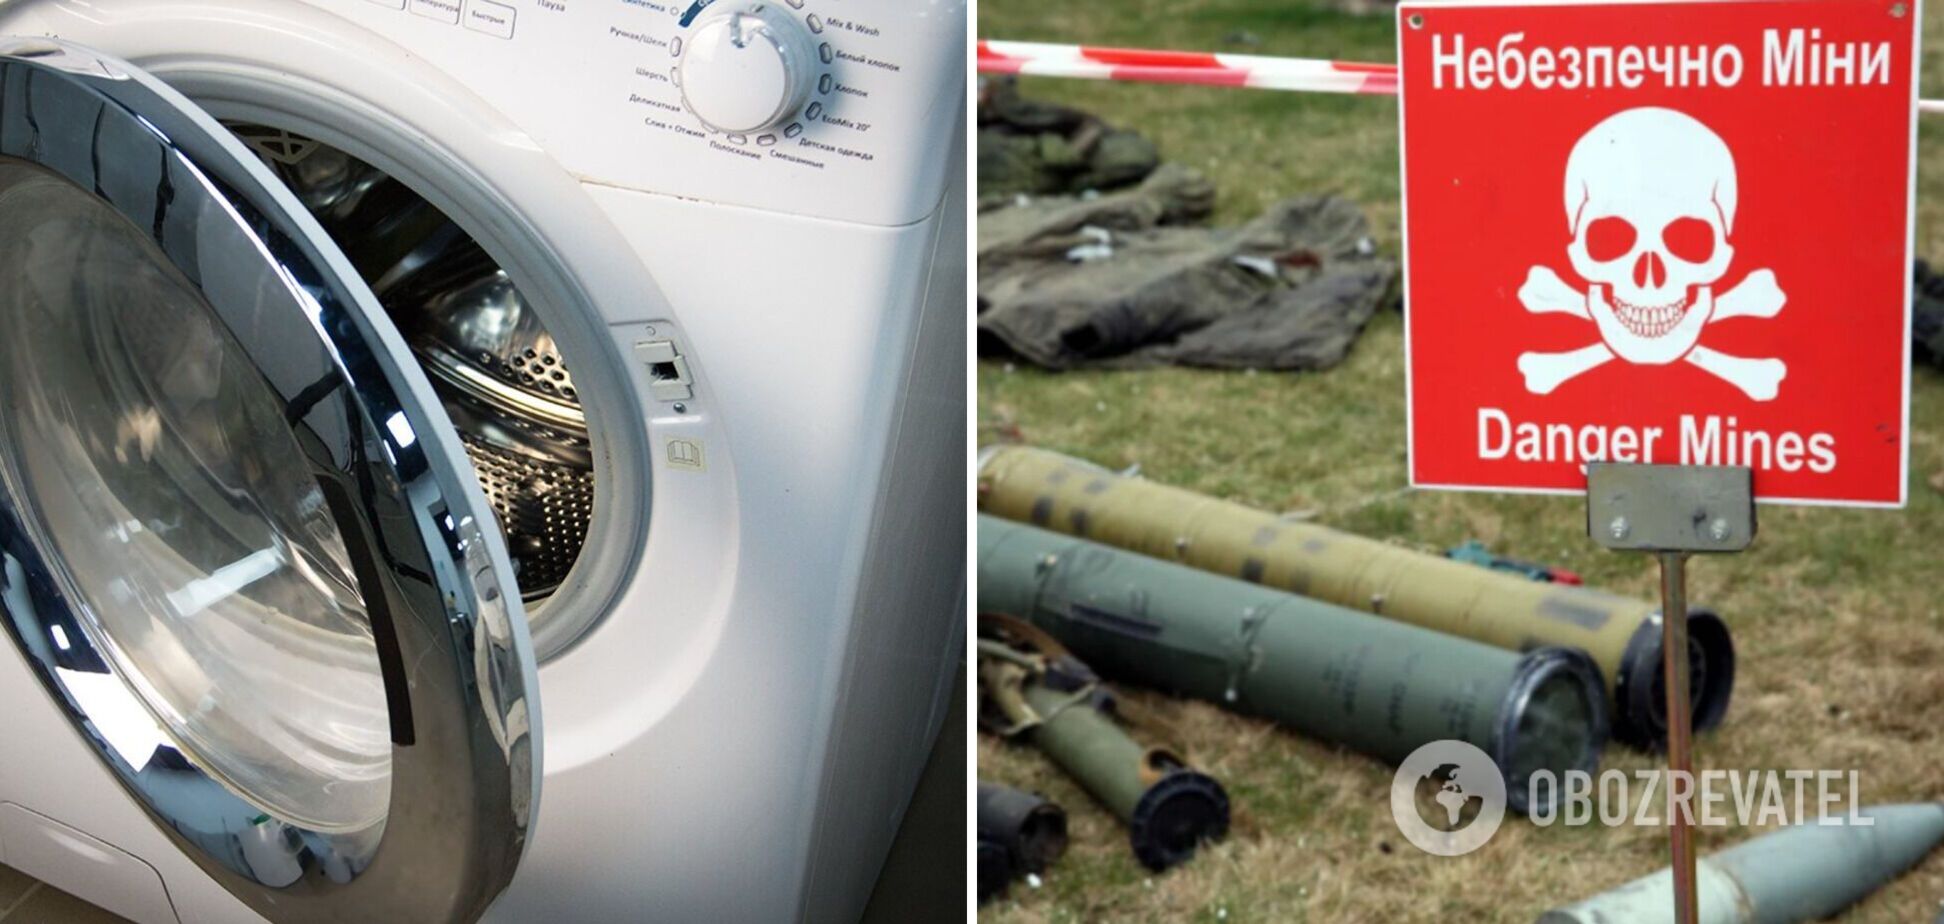 Російські окупанти перед відходом мінували навіть пральні машини у будинках українців. Відео